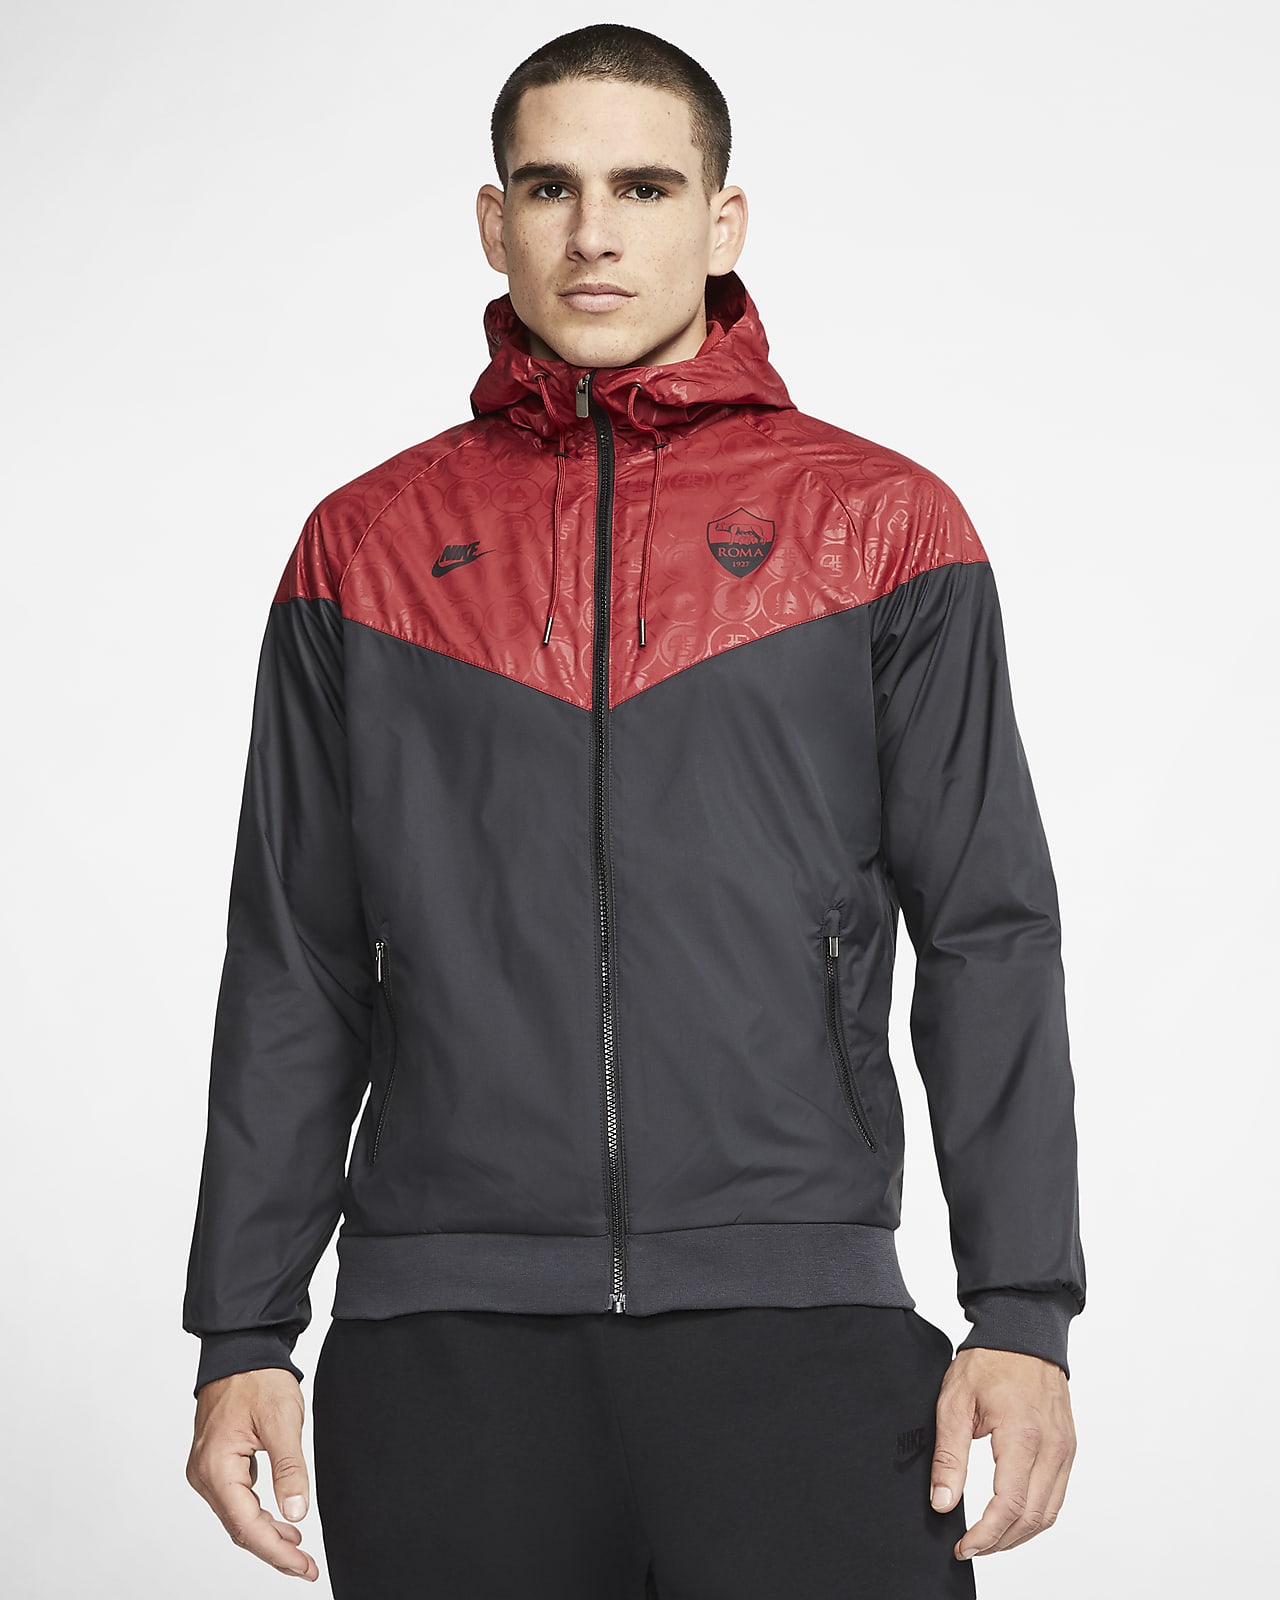 A.S. Roma Windrunner Men's Jacket. Nike SA